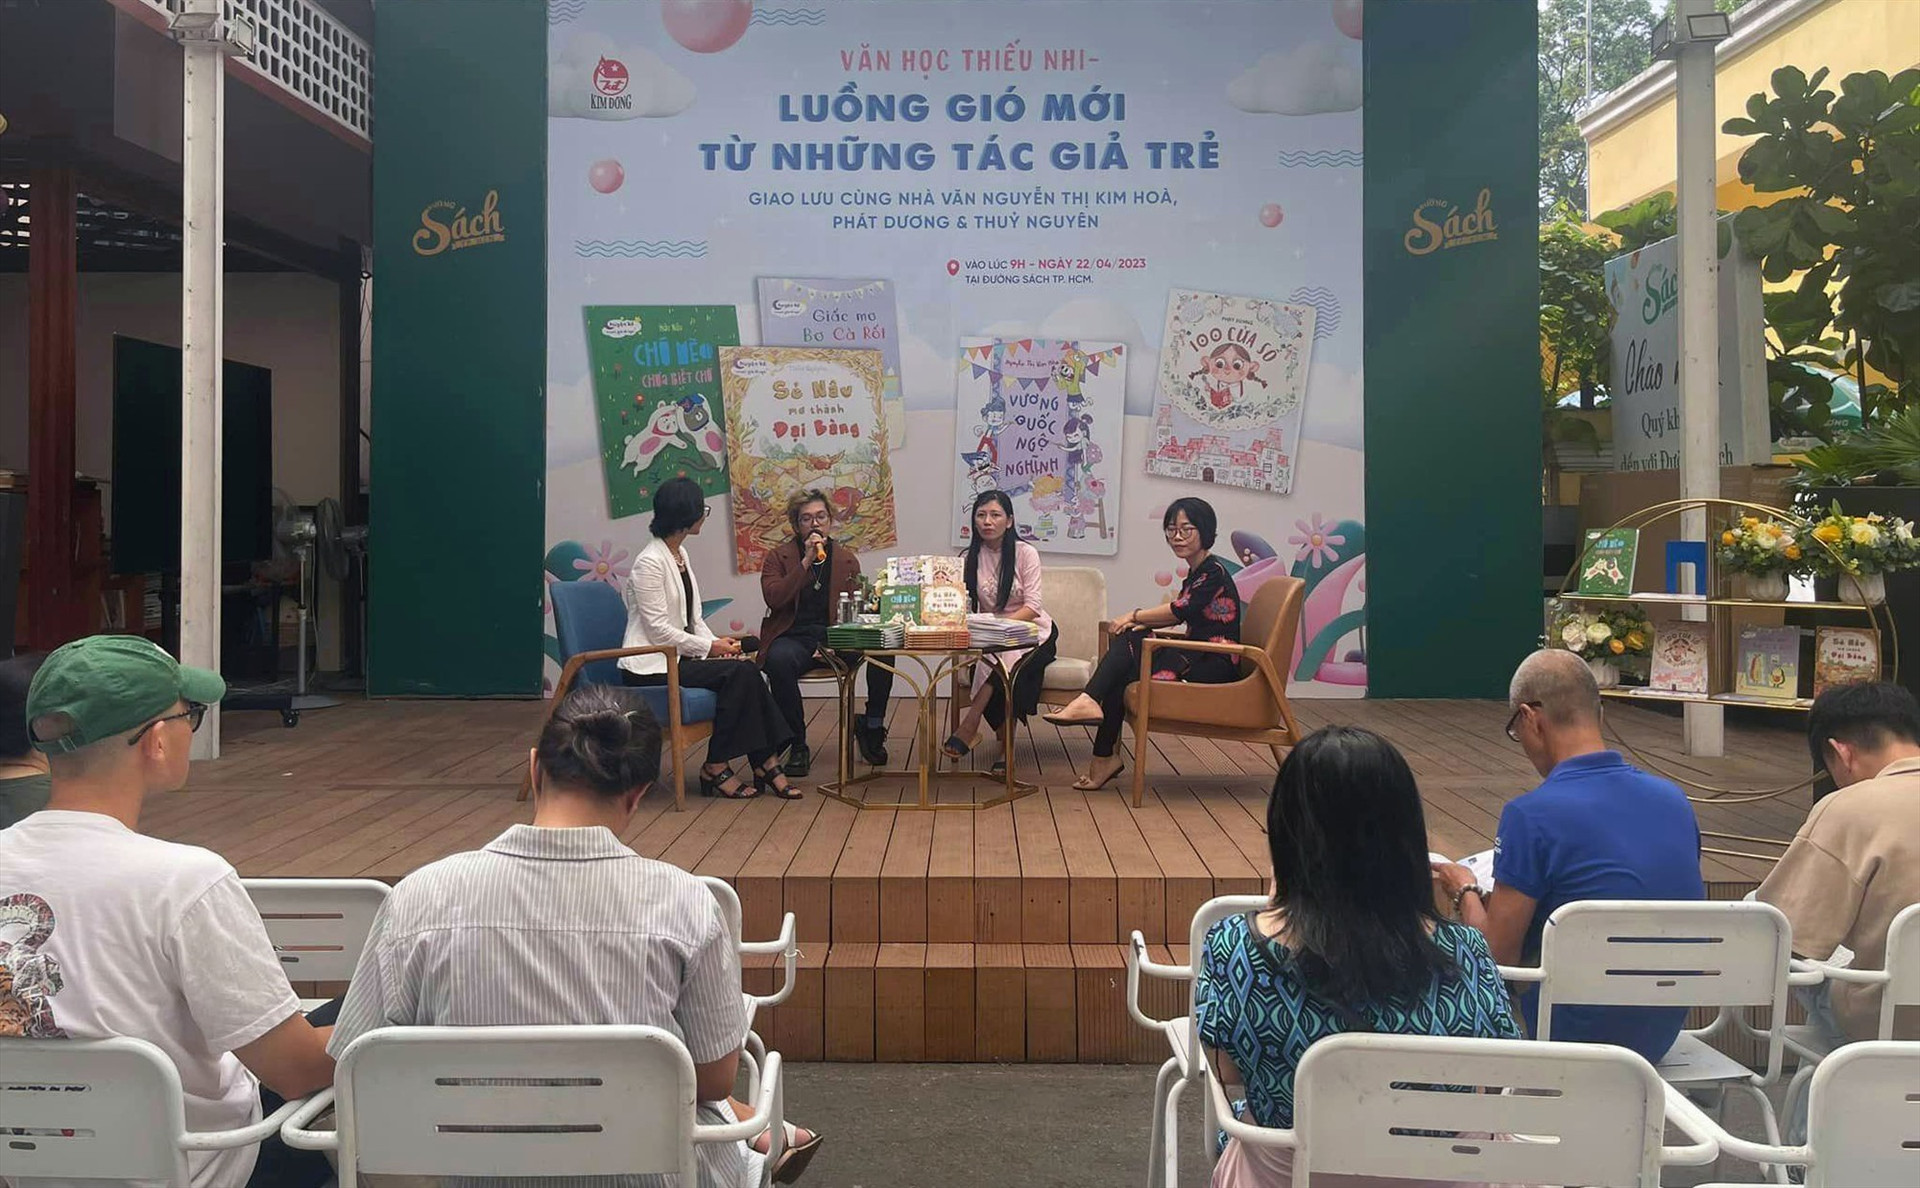 Một buổi ra mắt sách văn học thiếu nhi được tổ chức tại đường sách Nguyễn Văn Bình, TP.Hồ Chí Minh.